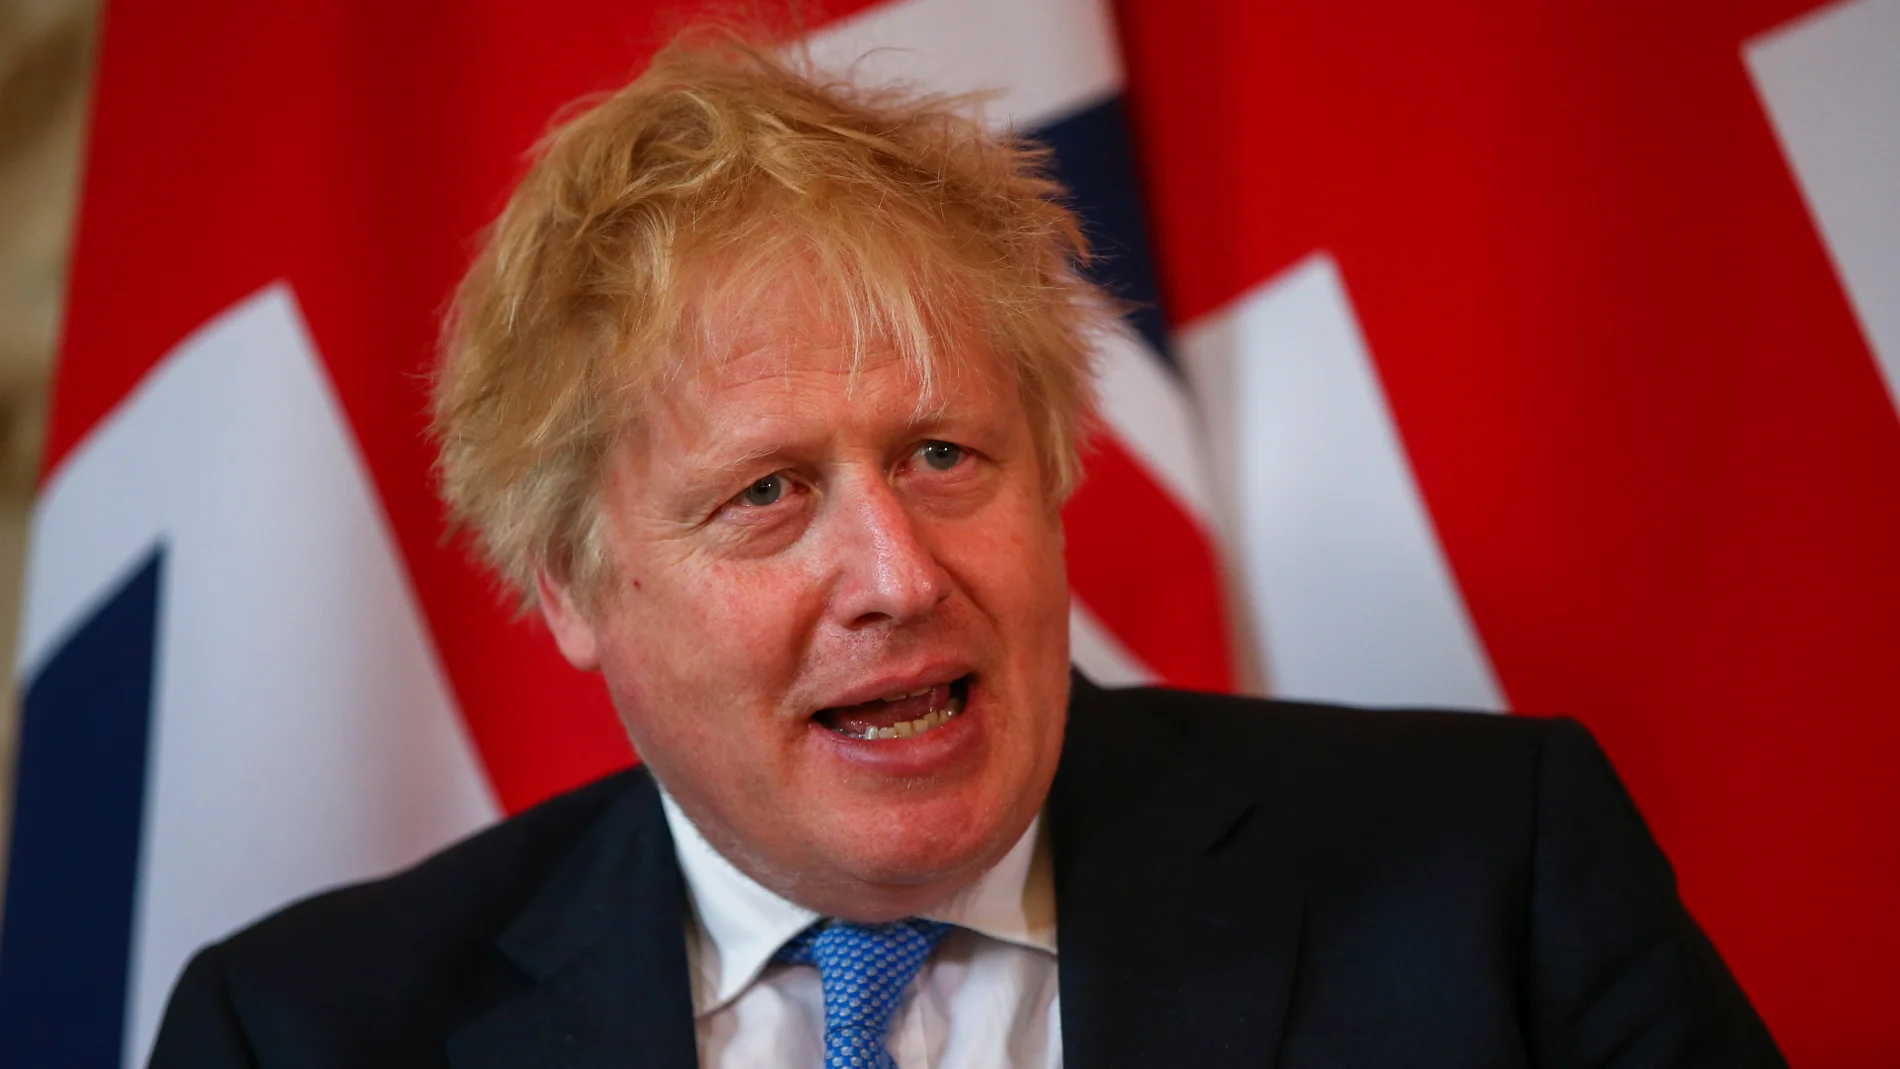 Boris Johnson será investigado sobre si mintió al Parlamento británico acerca las fiestas en Downing Street